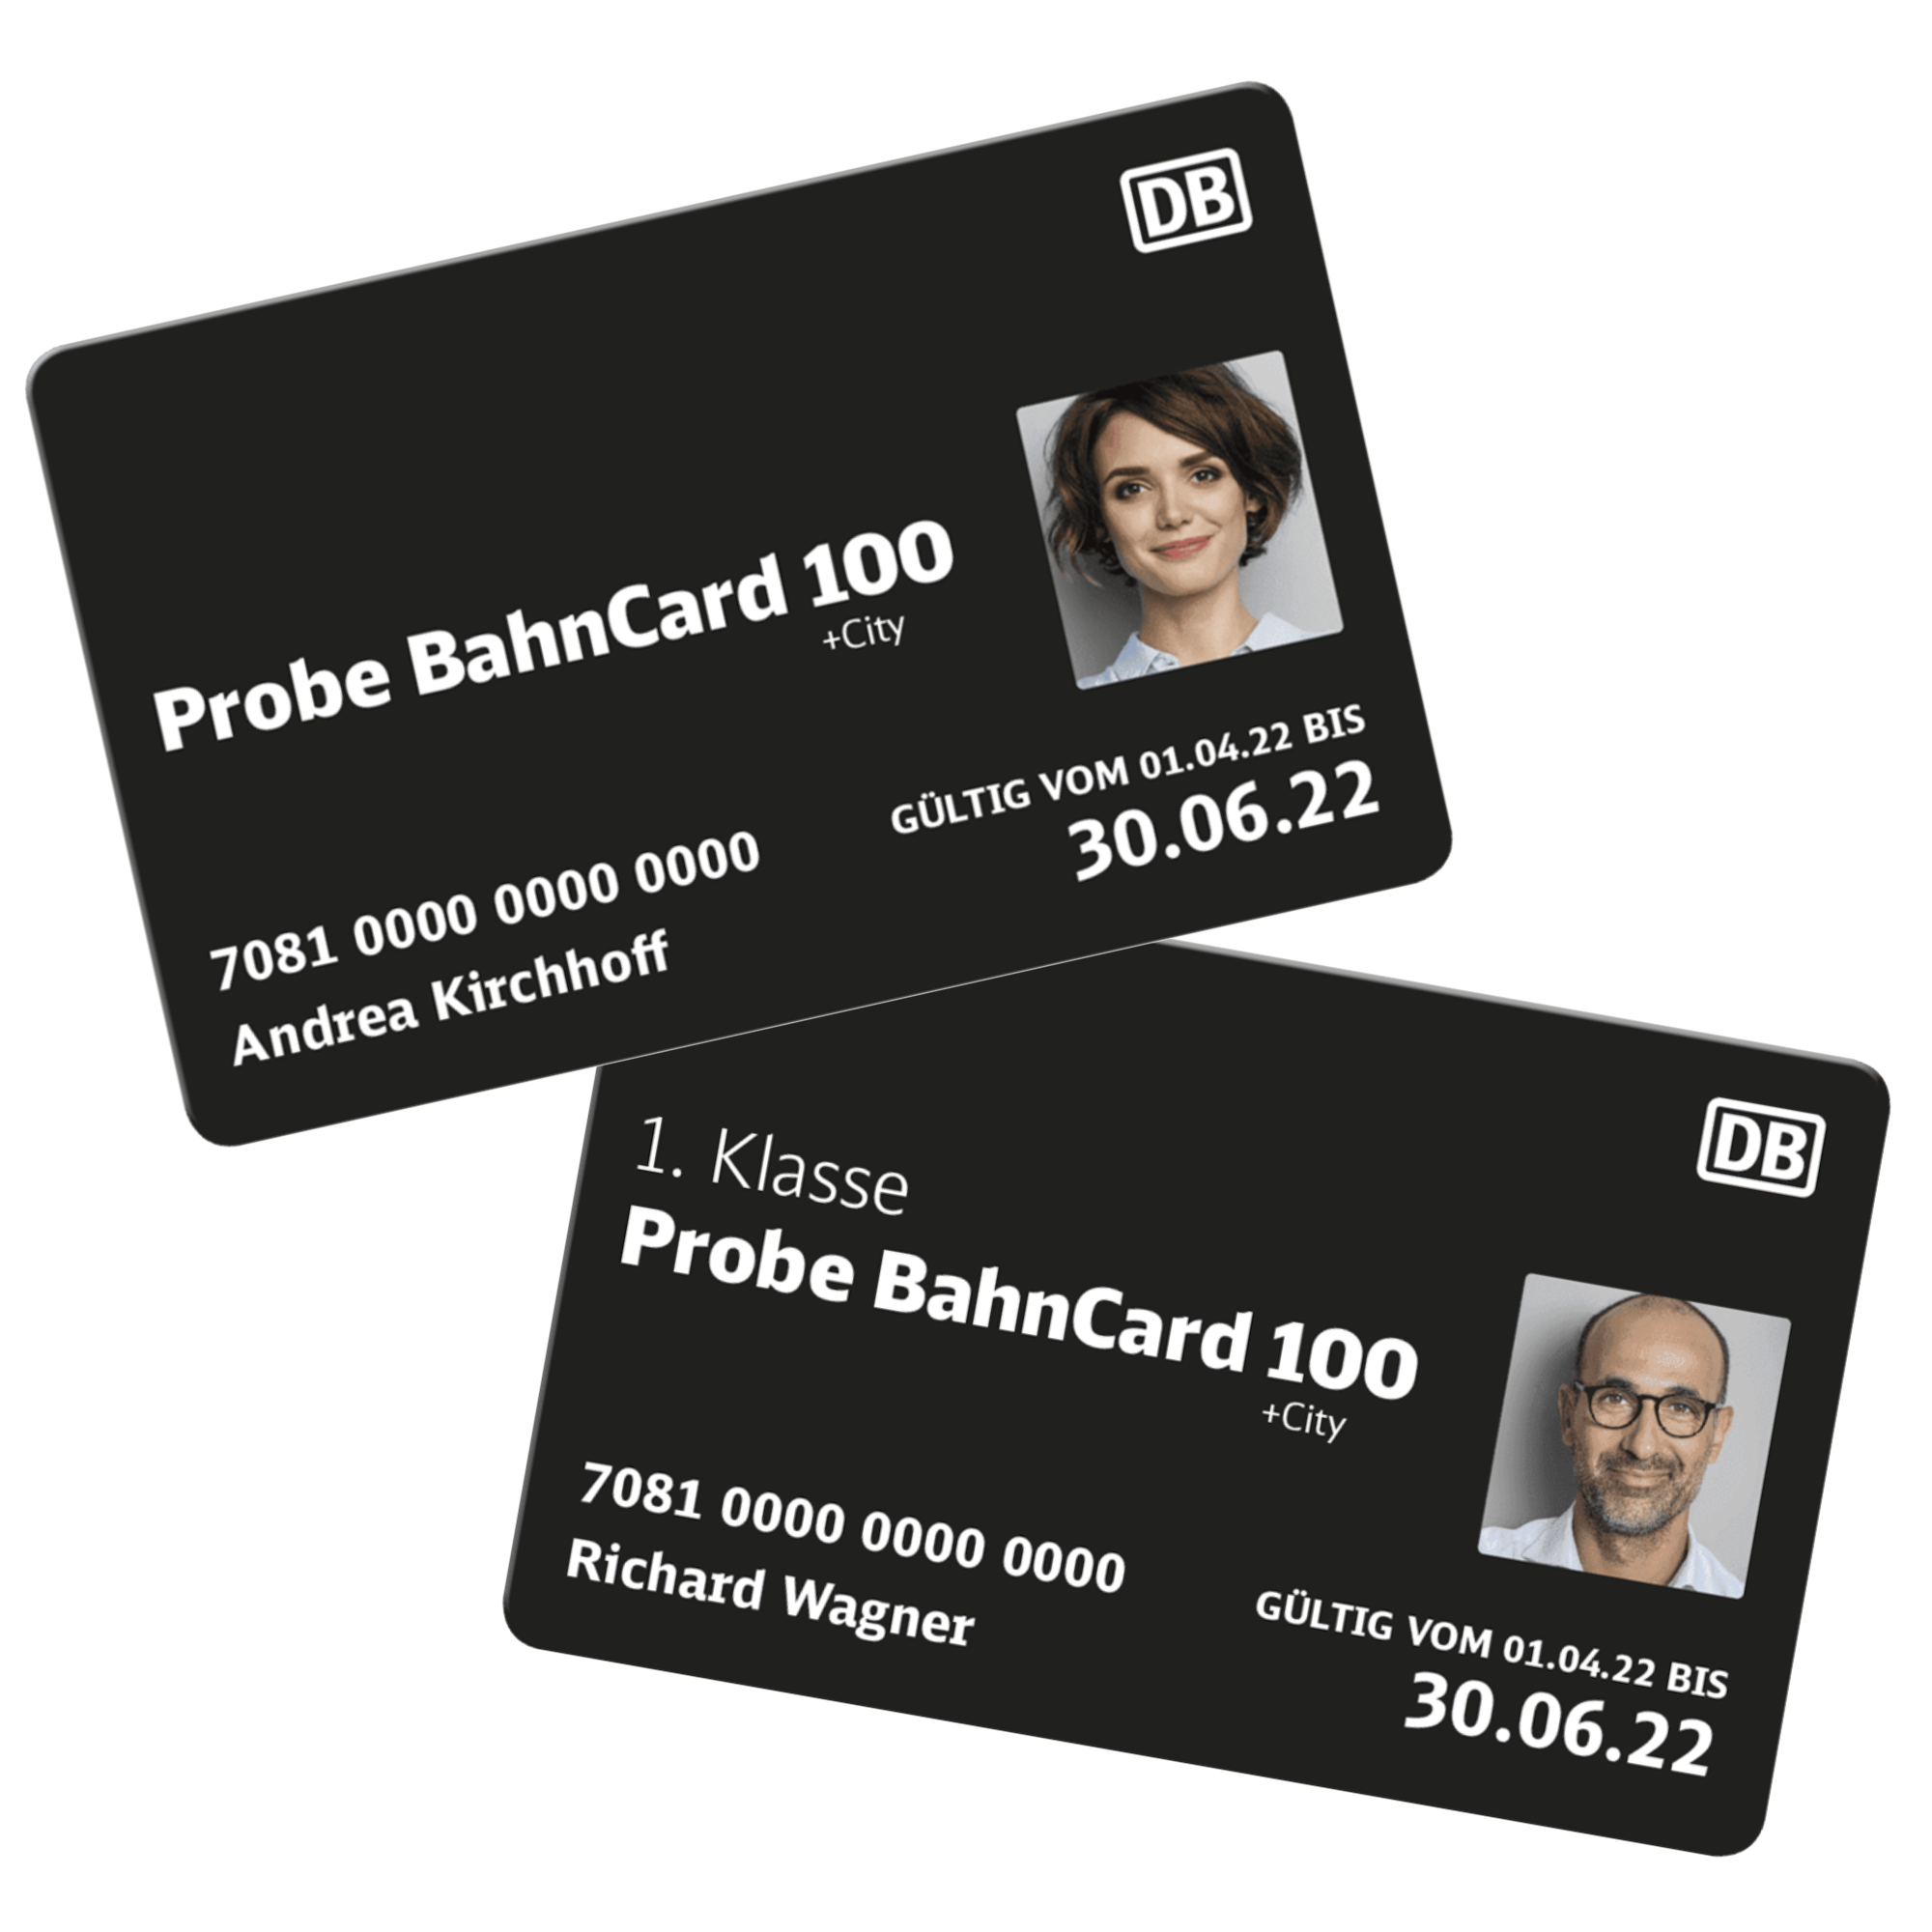 Probe BahnCard 100